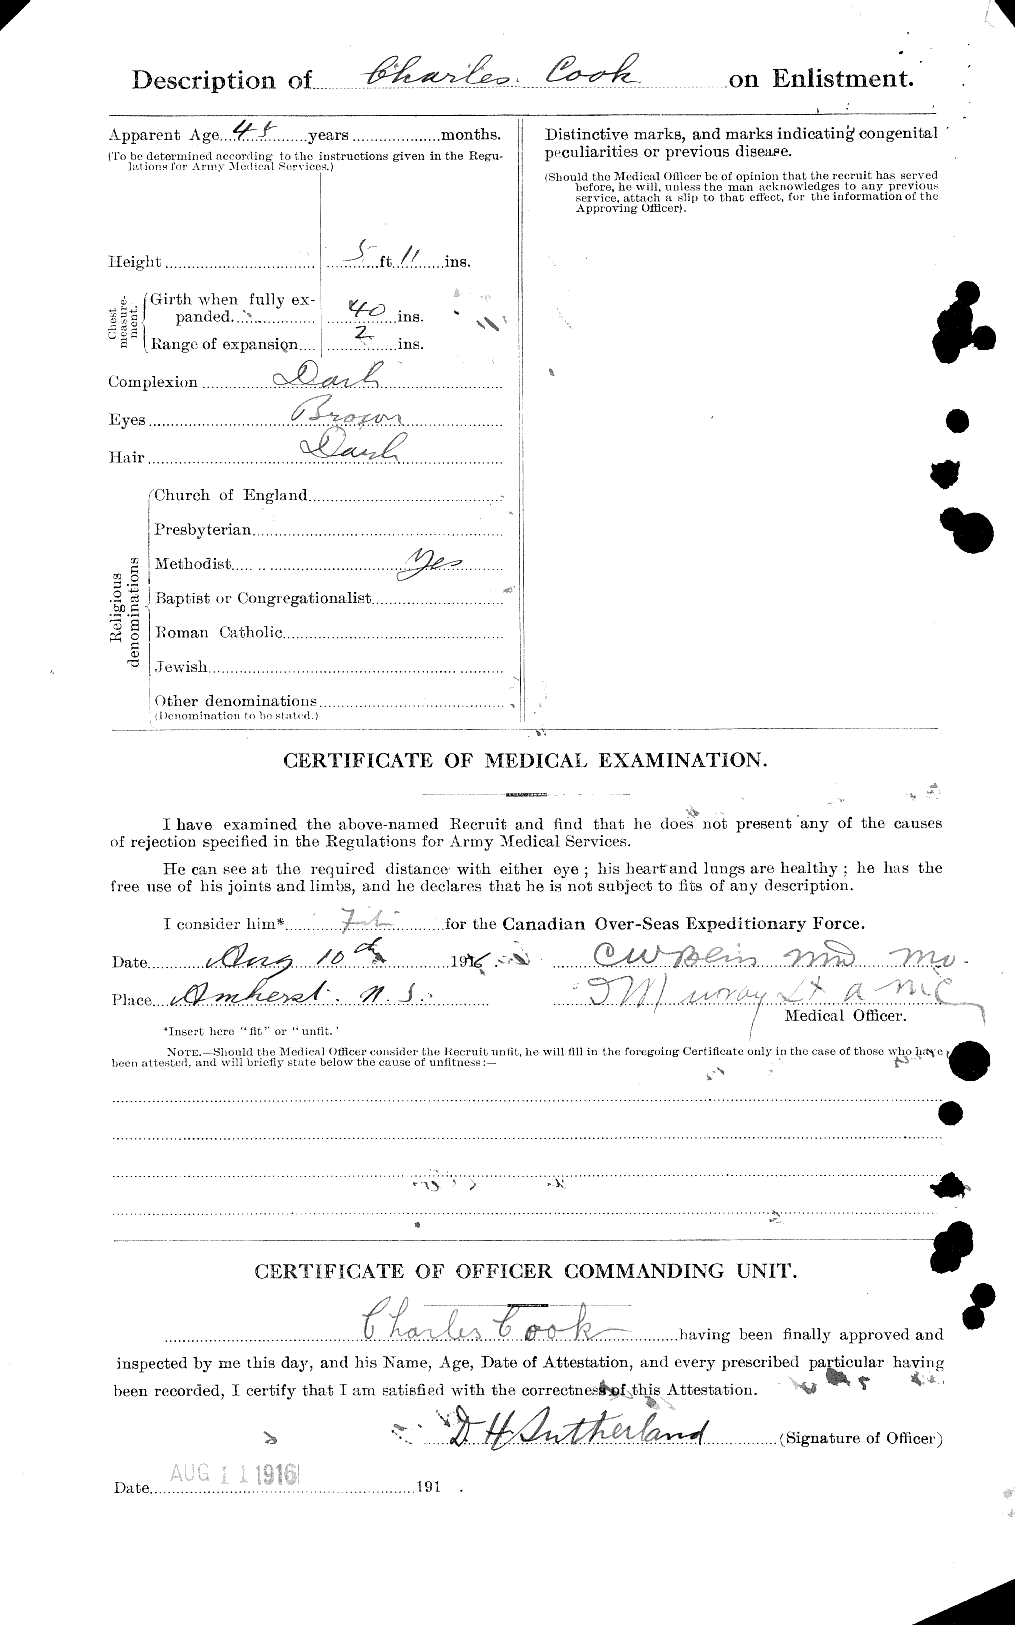 Dossiers du Personnel de la Première Guerre mondiale - CEC 041222b